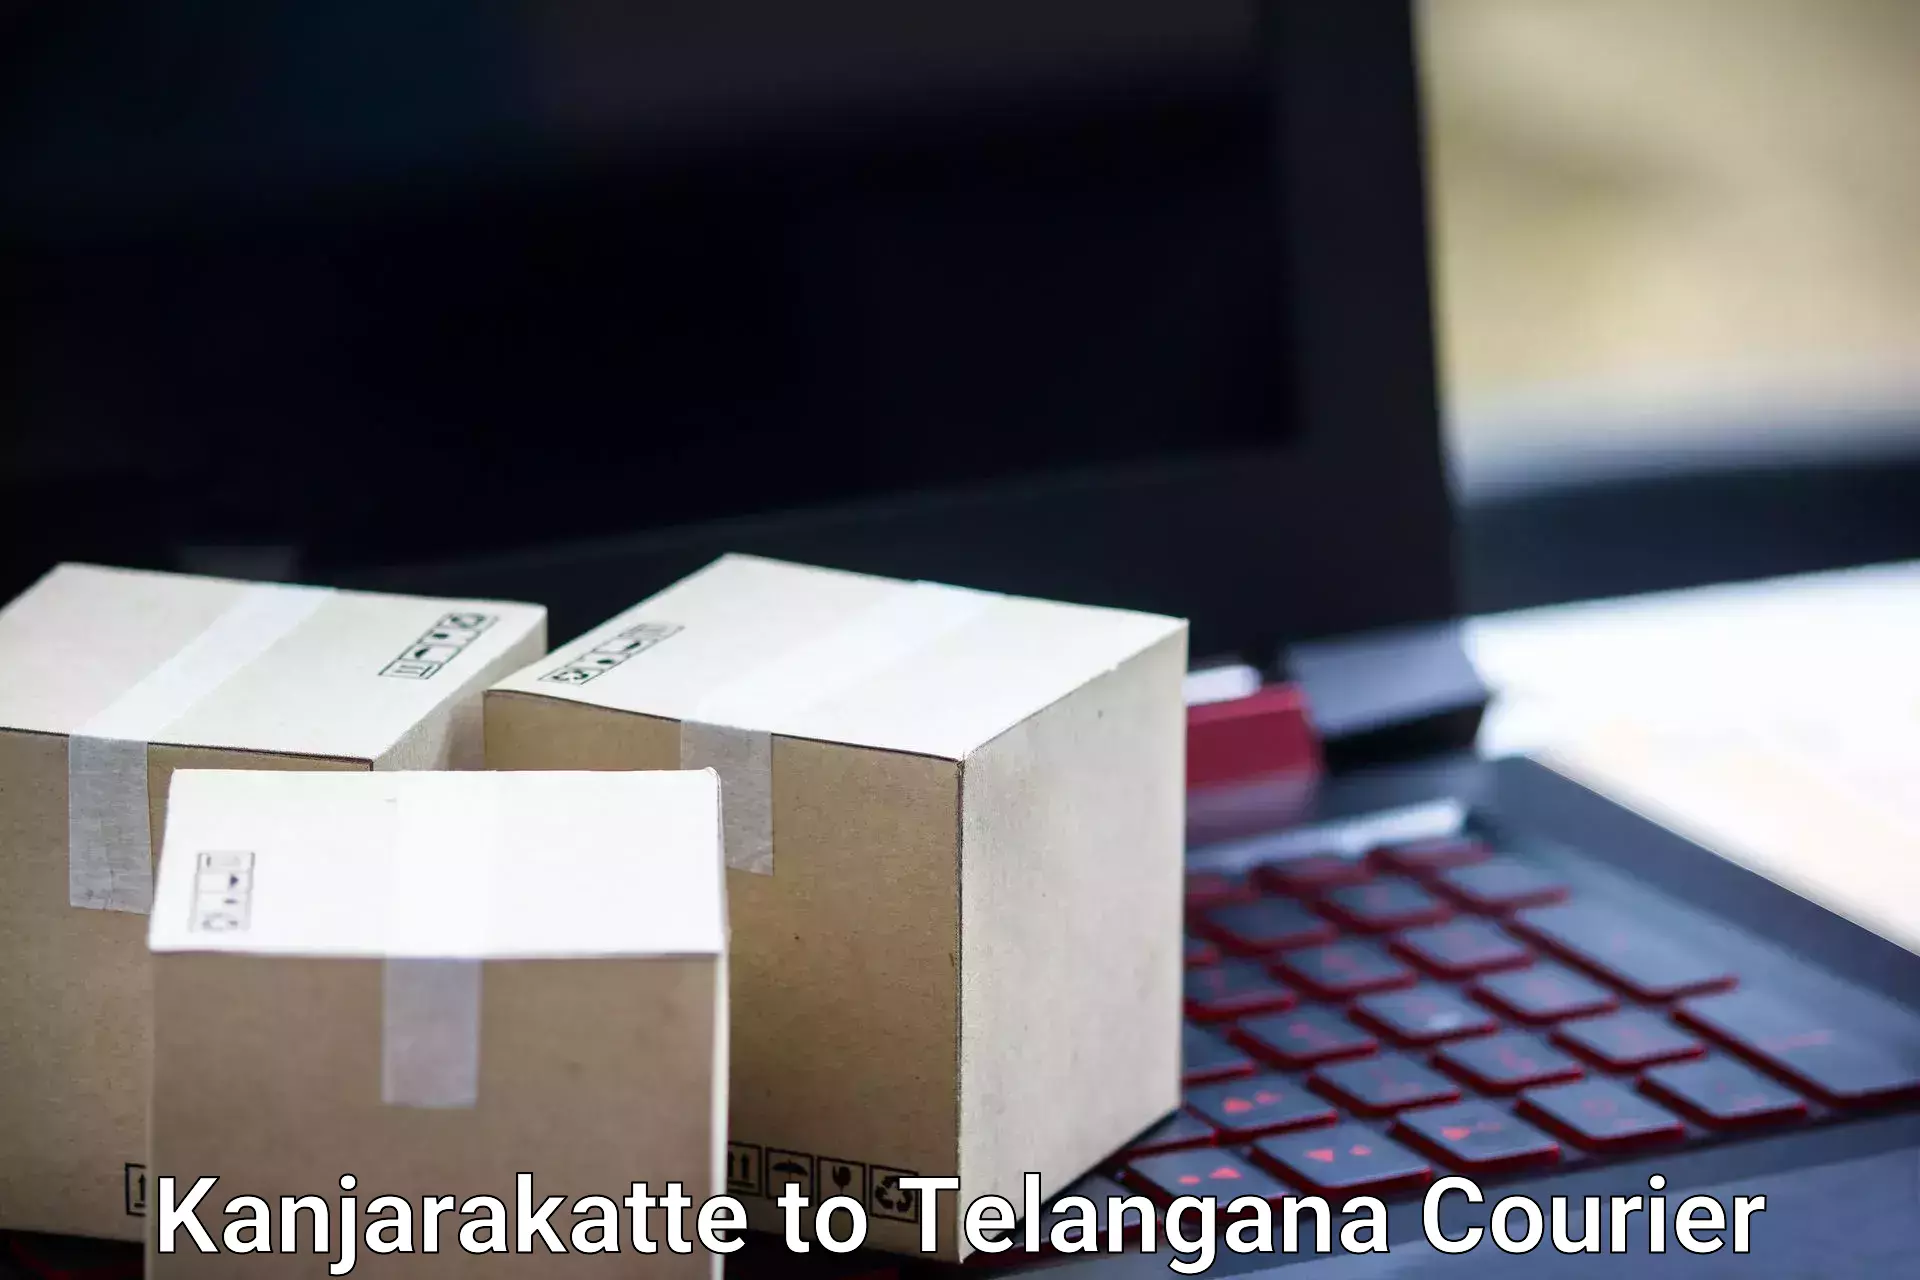 Baggage transport professionals Kanjarakatte to Telangana